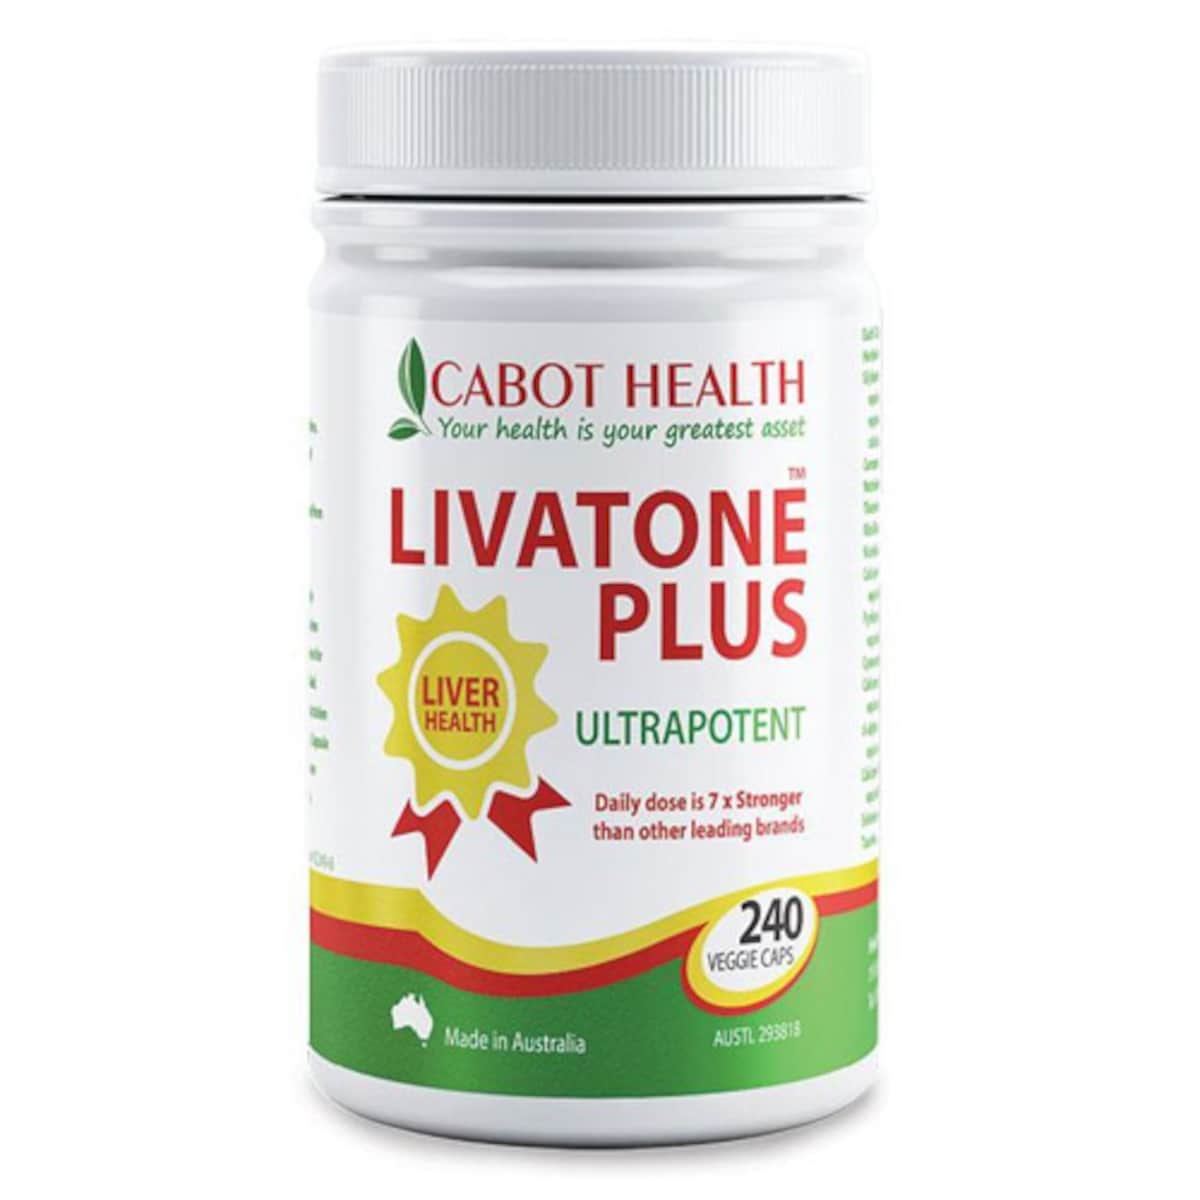 Cabot Health Livatone Plus Turmeric 240 Capsules Australia